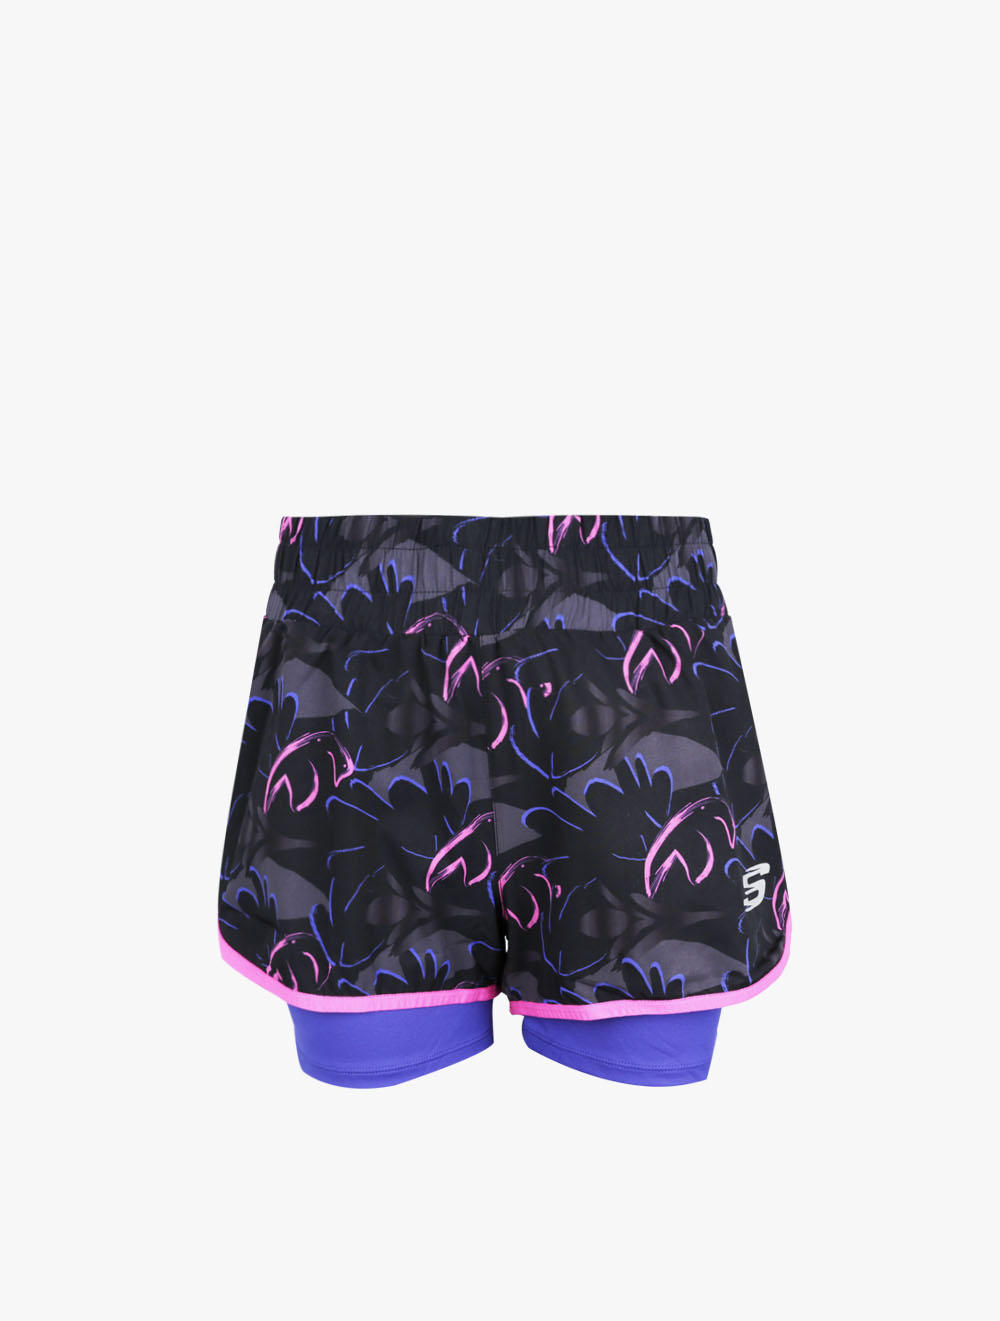 skechers shorts womens purple